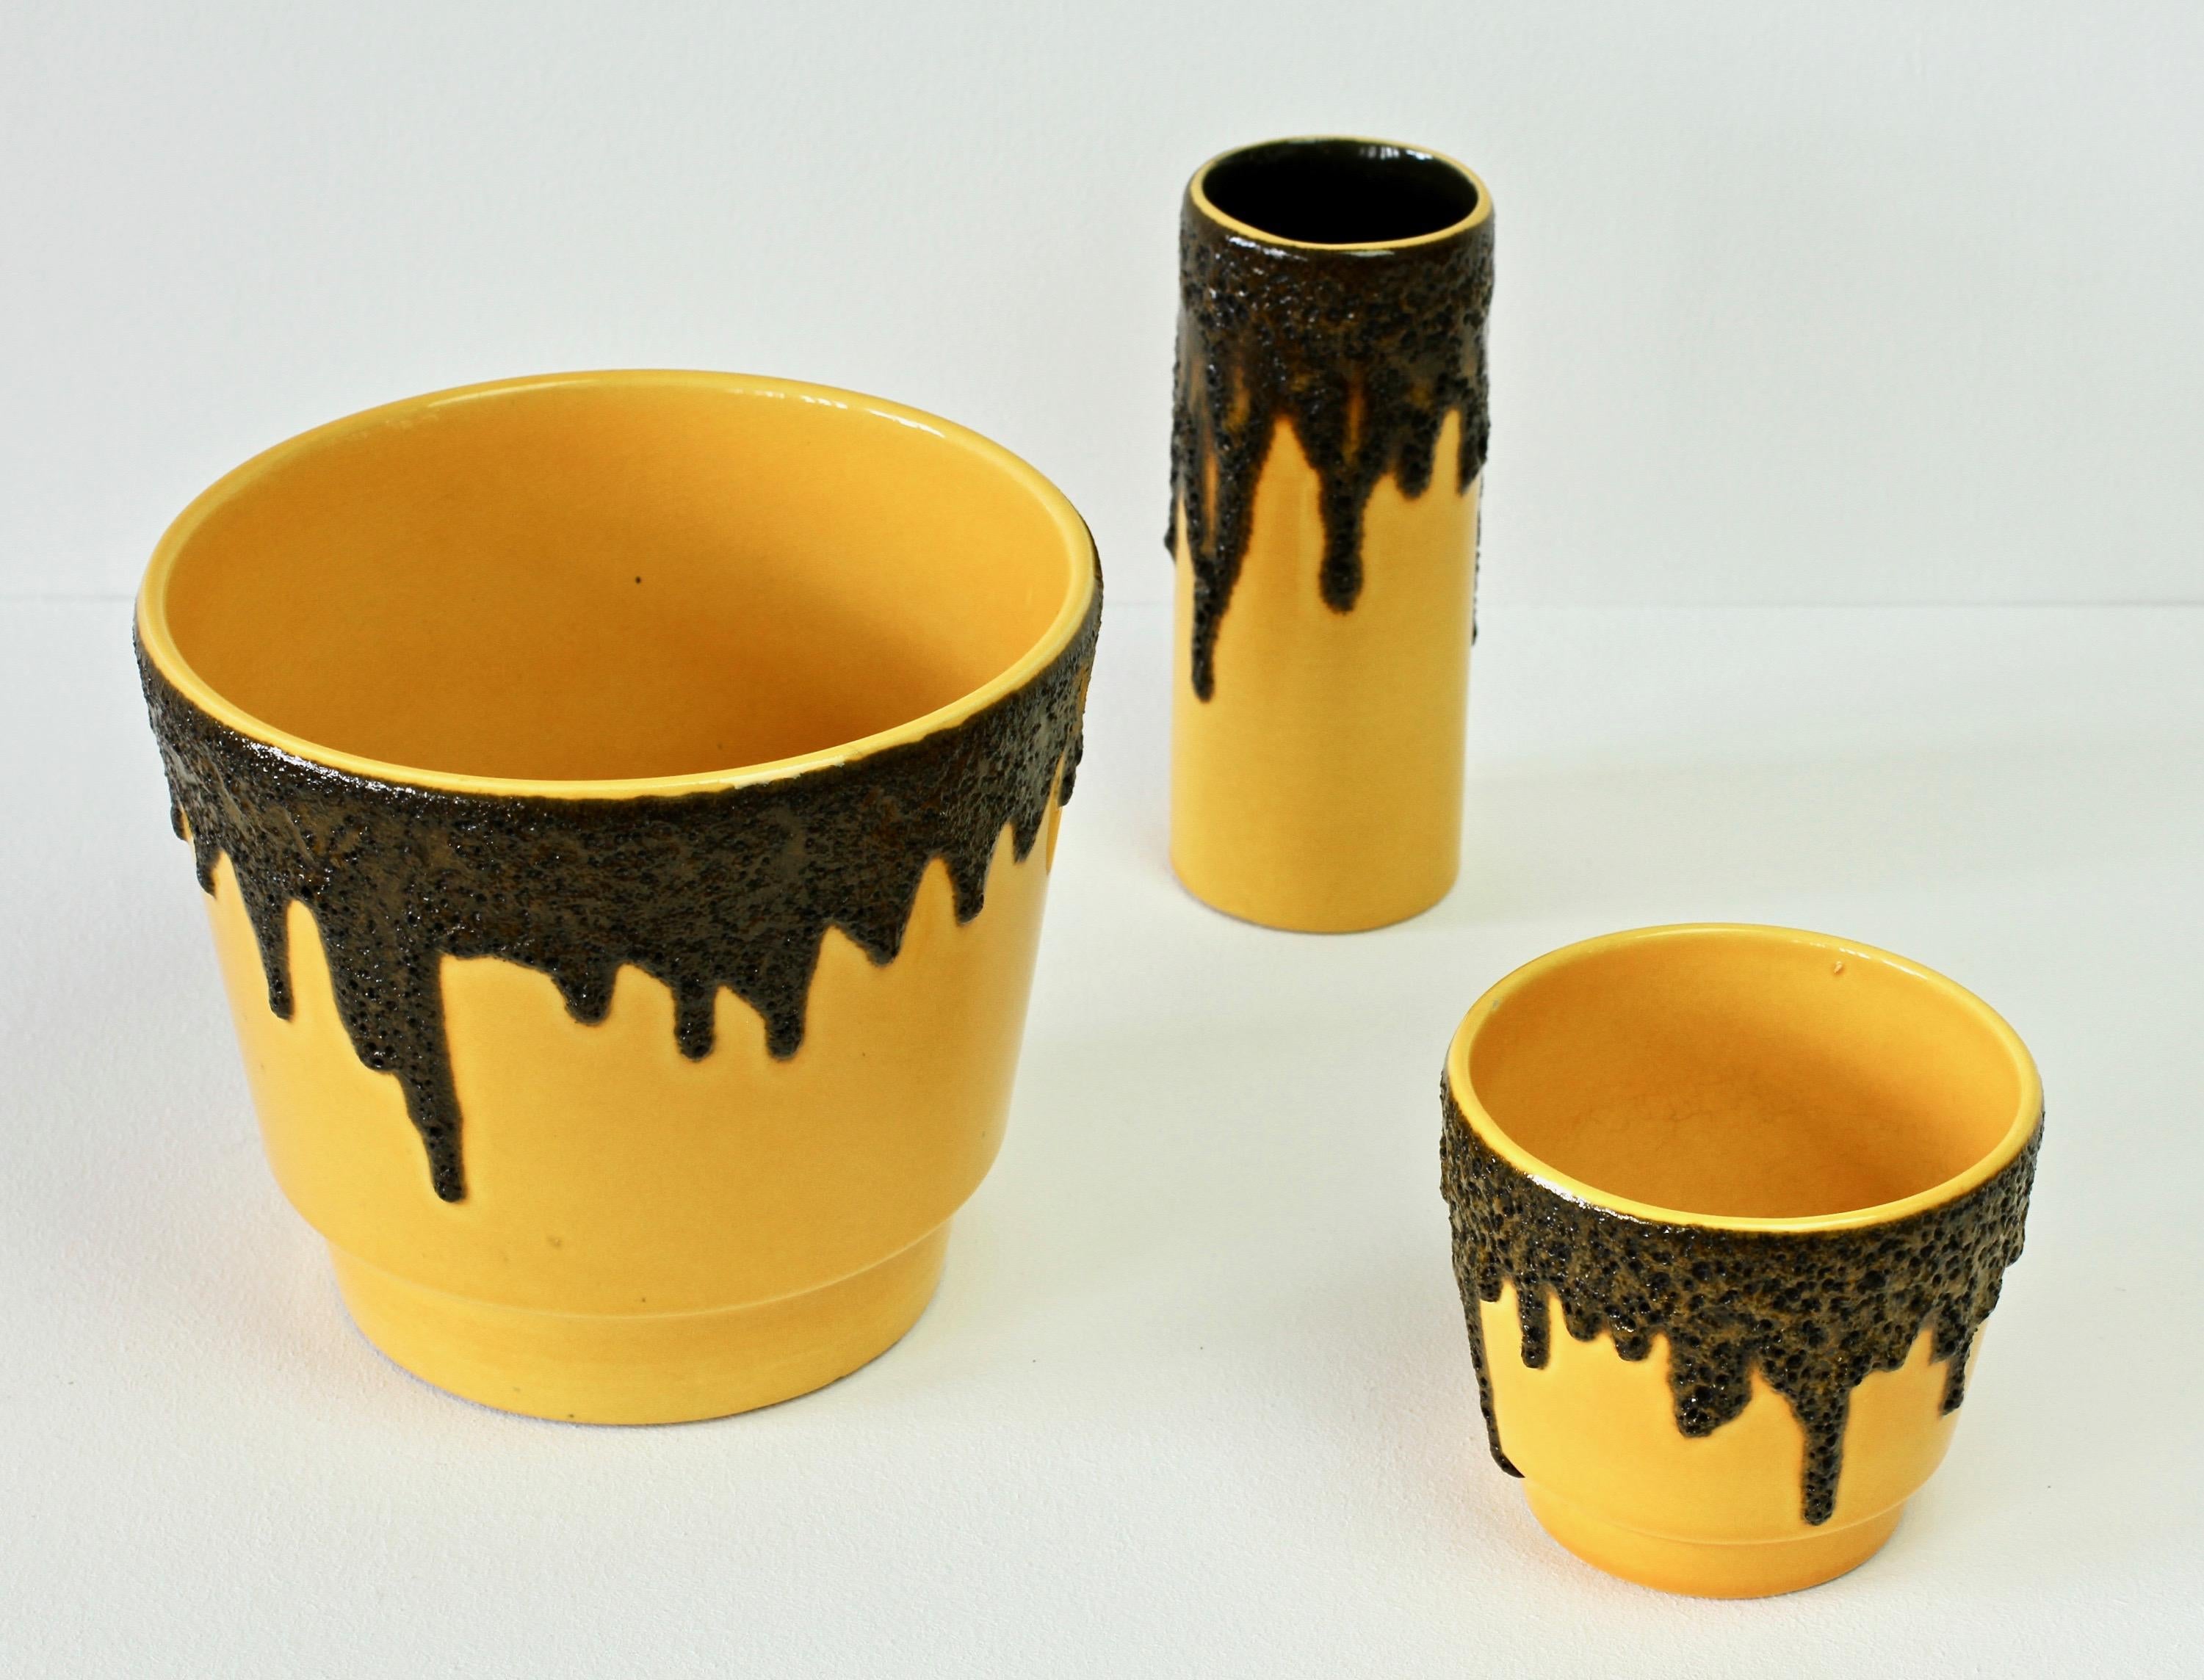 Westdeutsche Vintage-Vase mit schwarzer Lavaglasur, leuchtend gelb, 1970er Jahre (Glasiert)